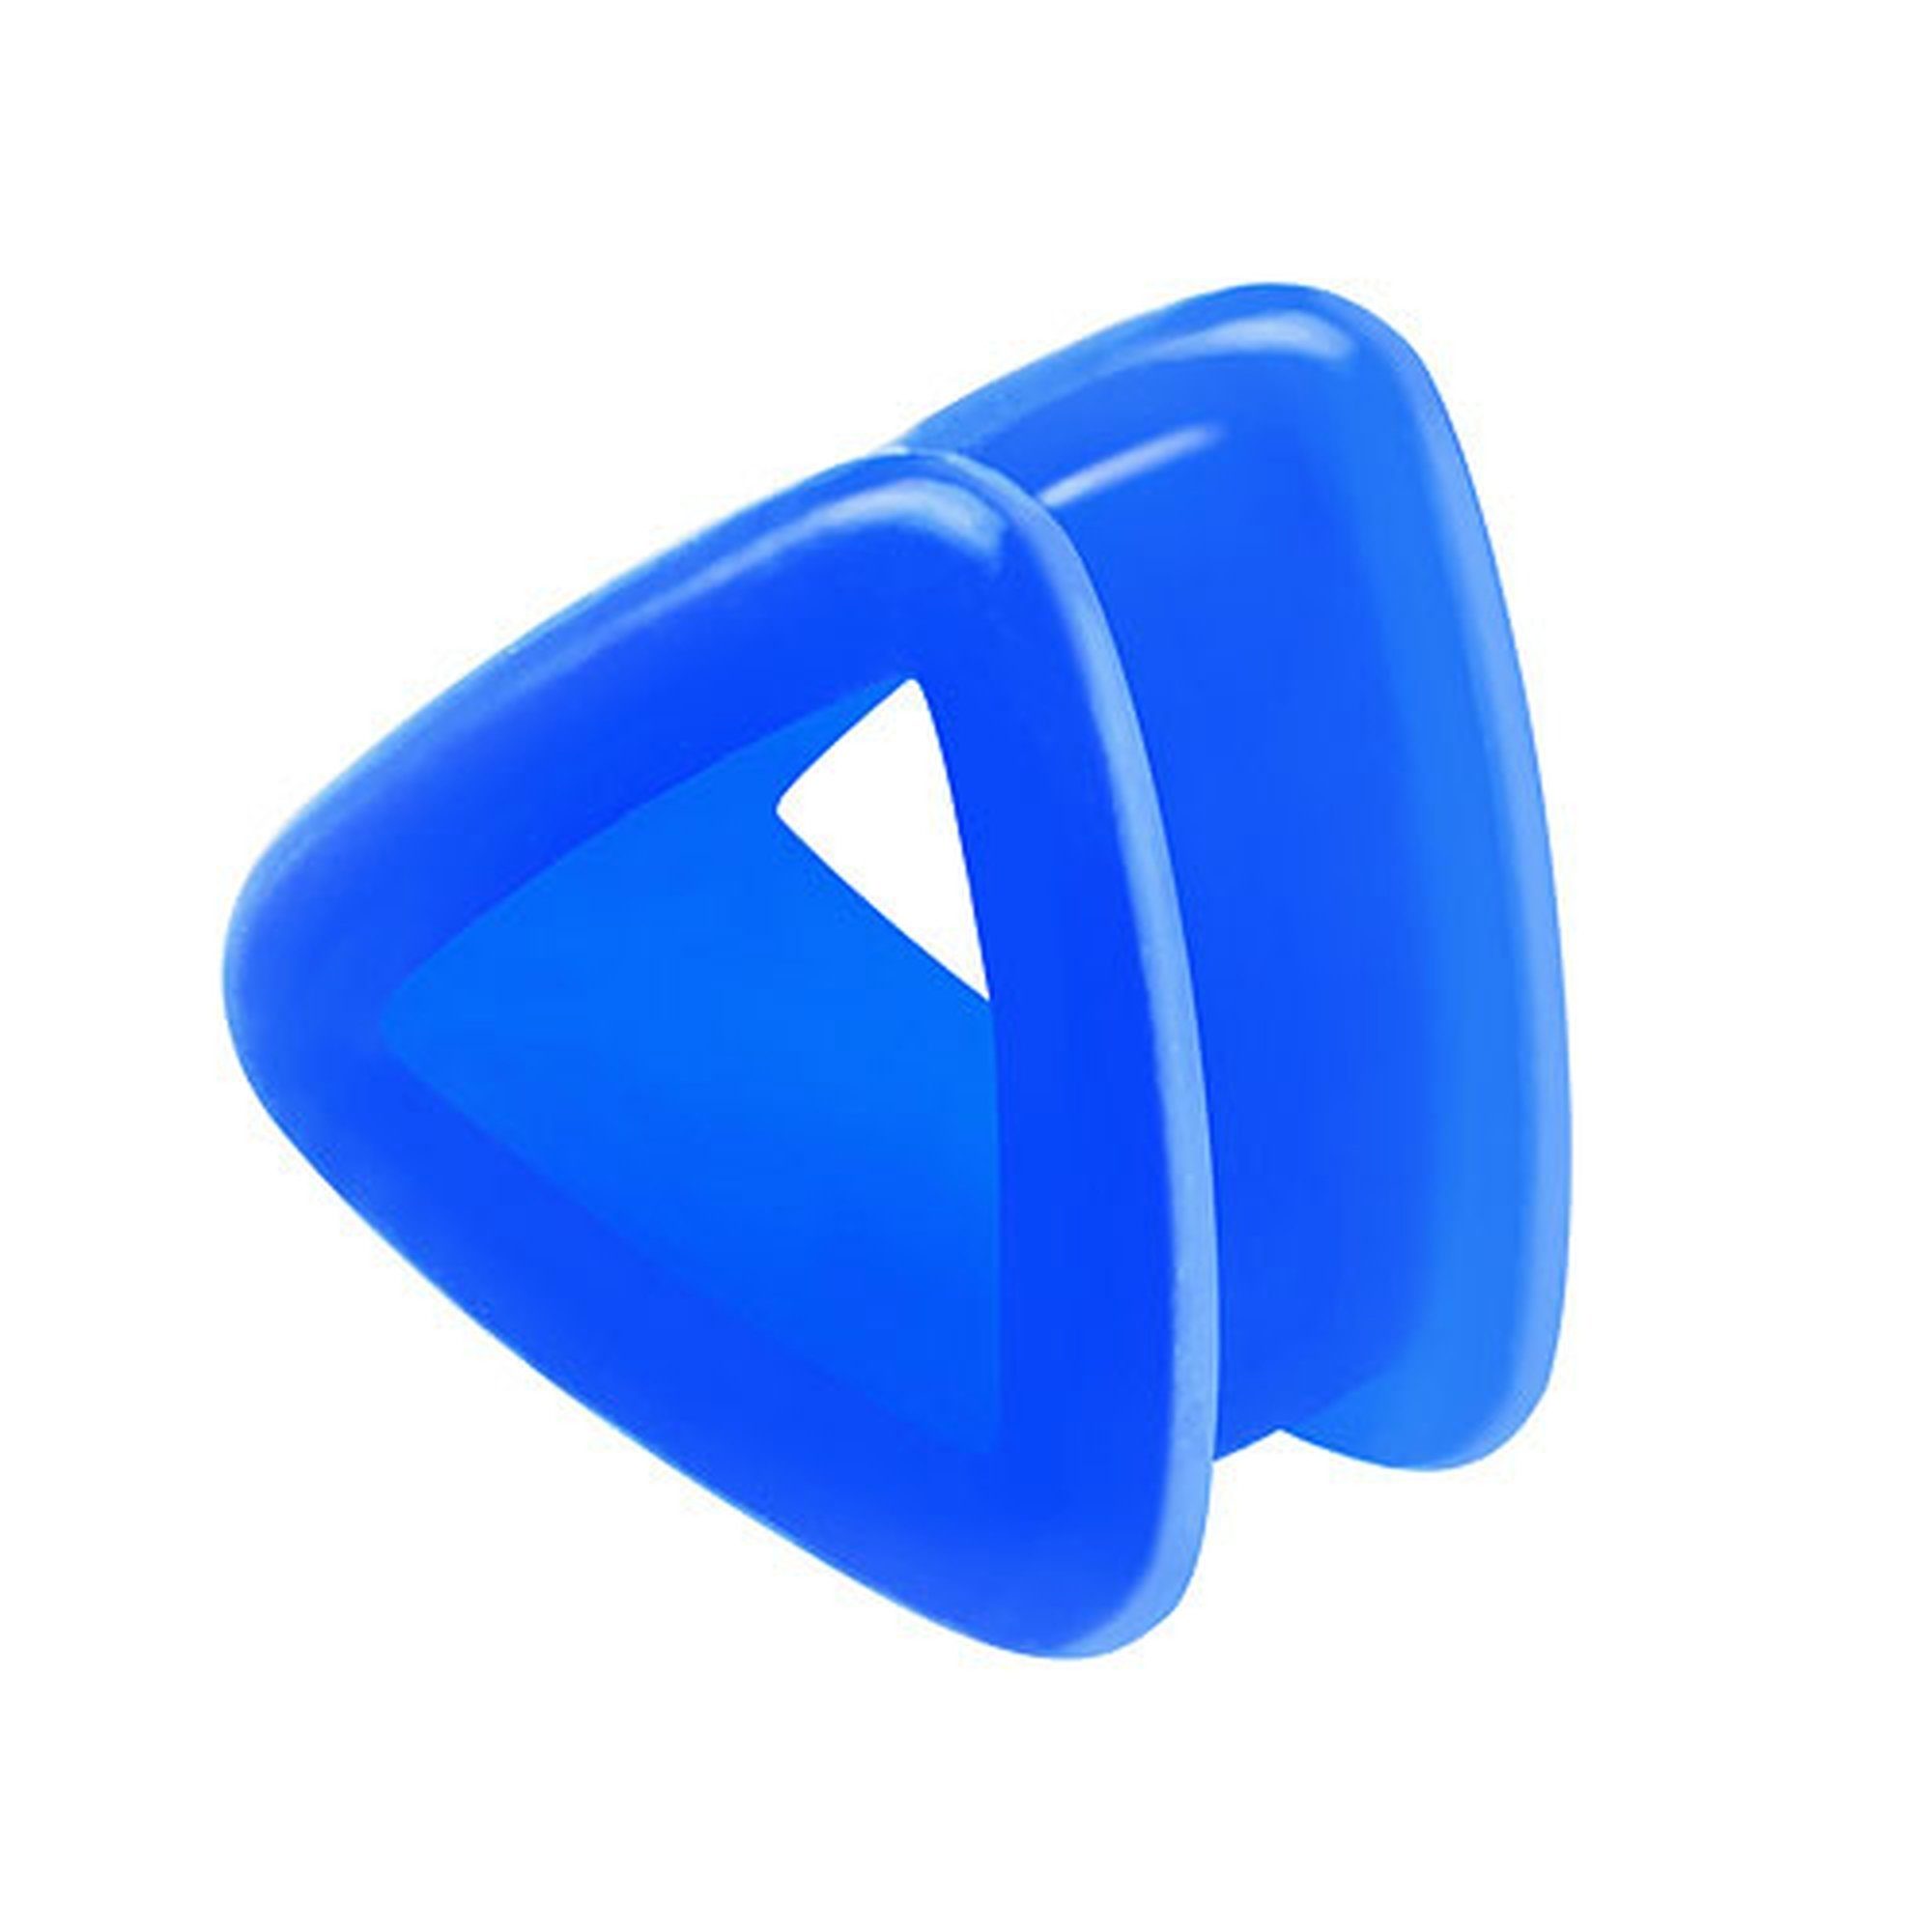 Taffstyle Plug Piercing Flexibel Ohr Plug Dreieck, Bunt Silikon Flesh Tunnel Plug Dreieck Piercing Flexibel Ohrpiercing Blau | Plugs